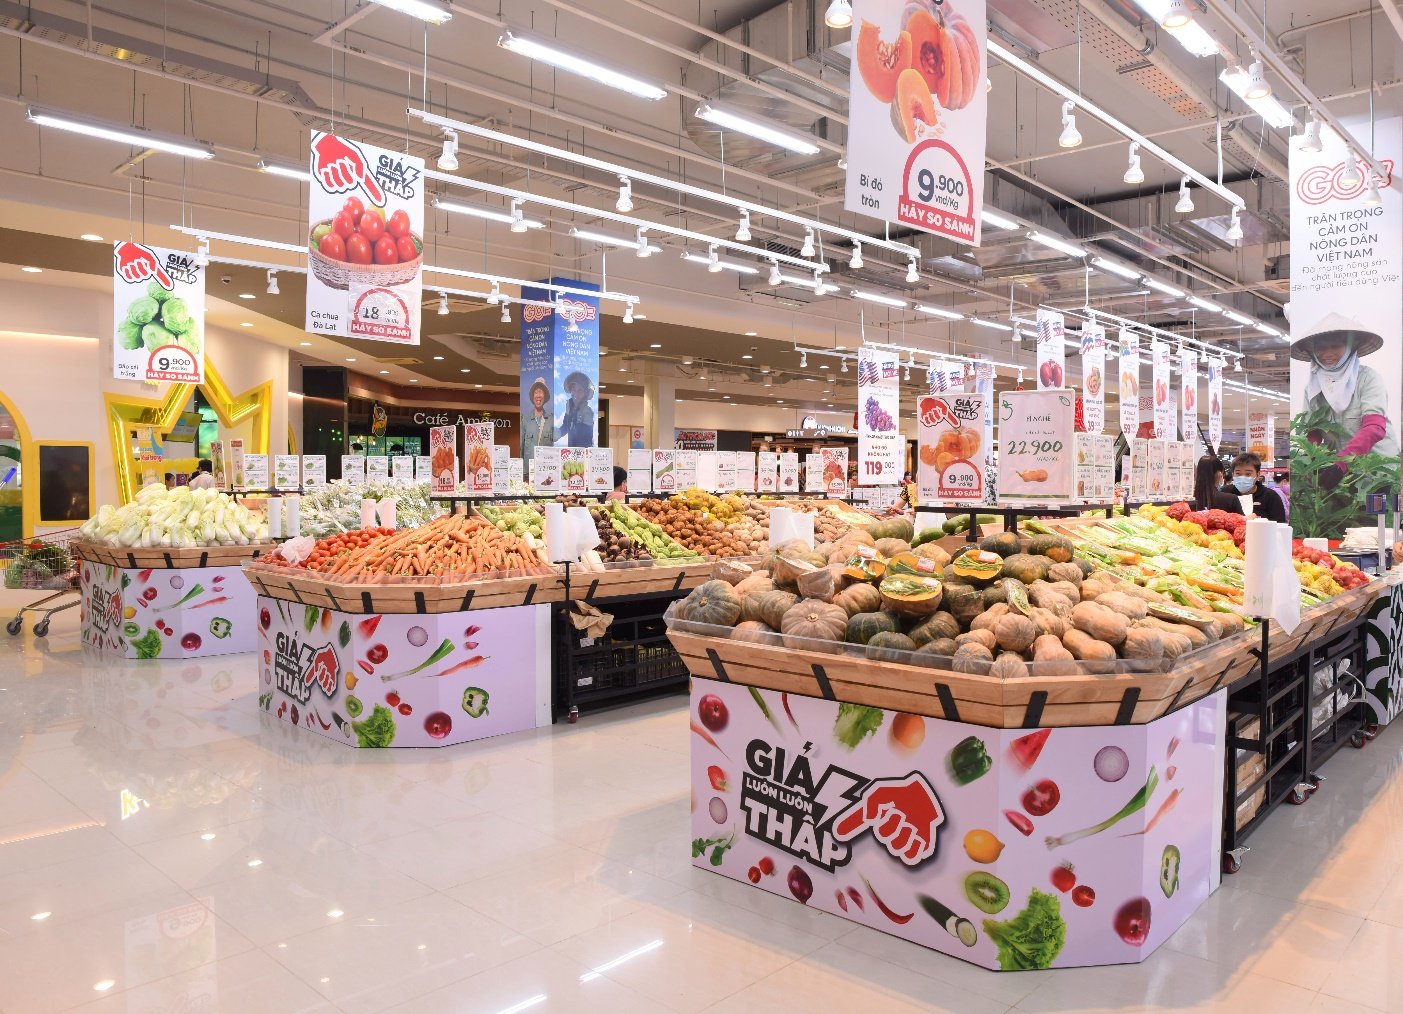 Big C ( GO ) - Top-rated supermarket in Vietnam